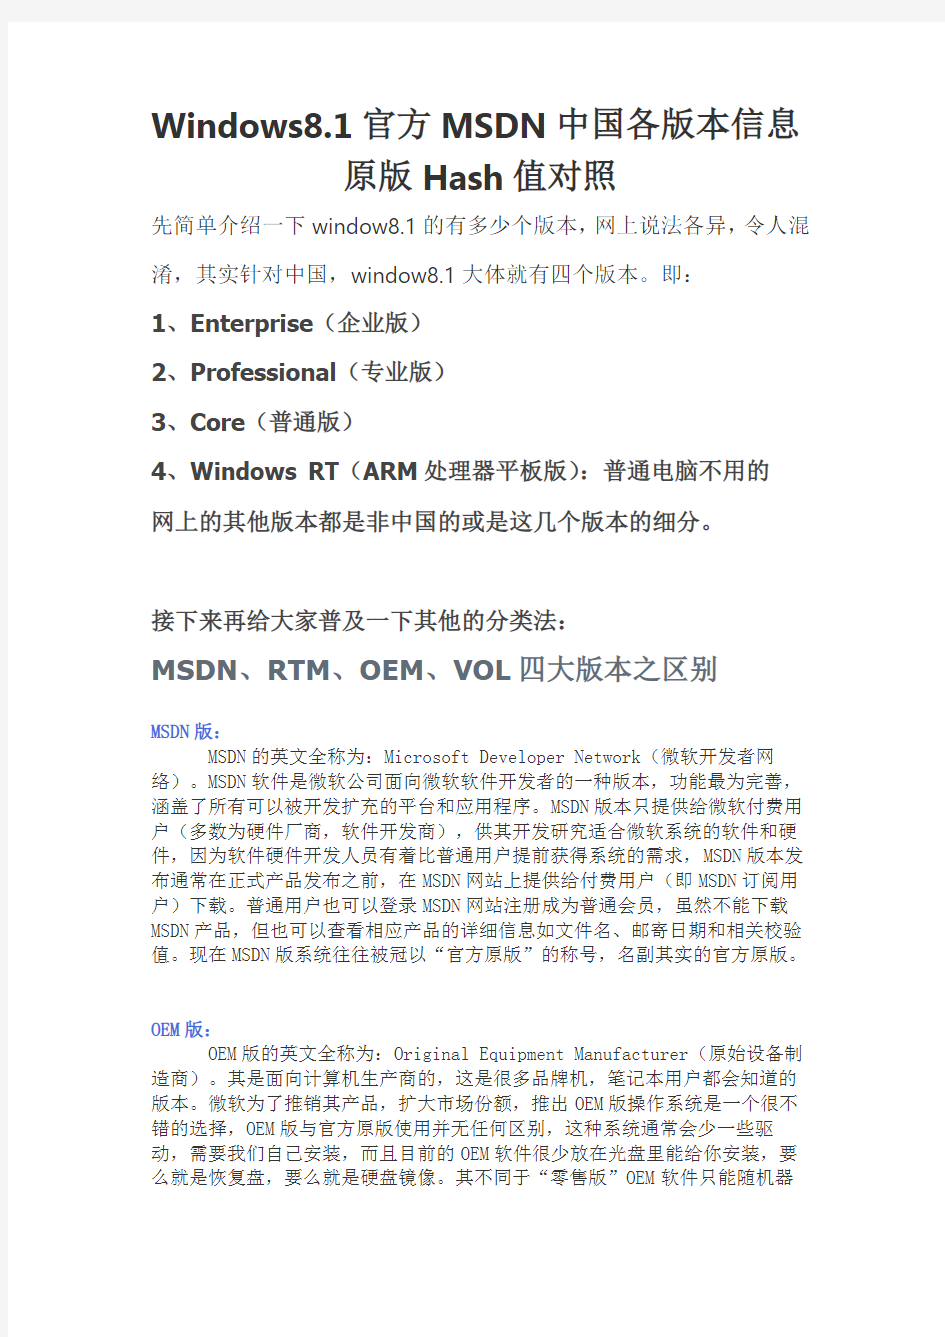 Windows8.1官方MSDN中国各版本介绍及Hash